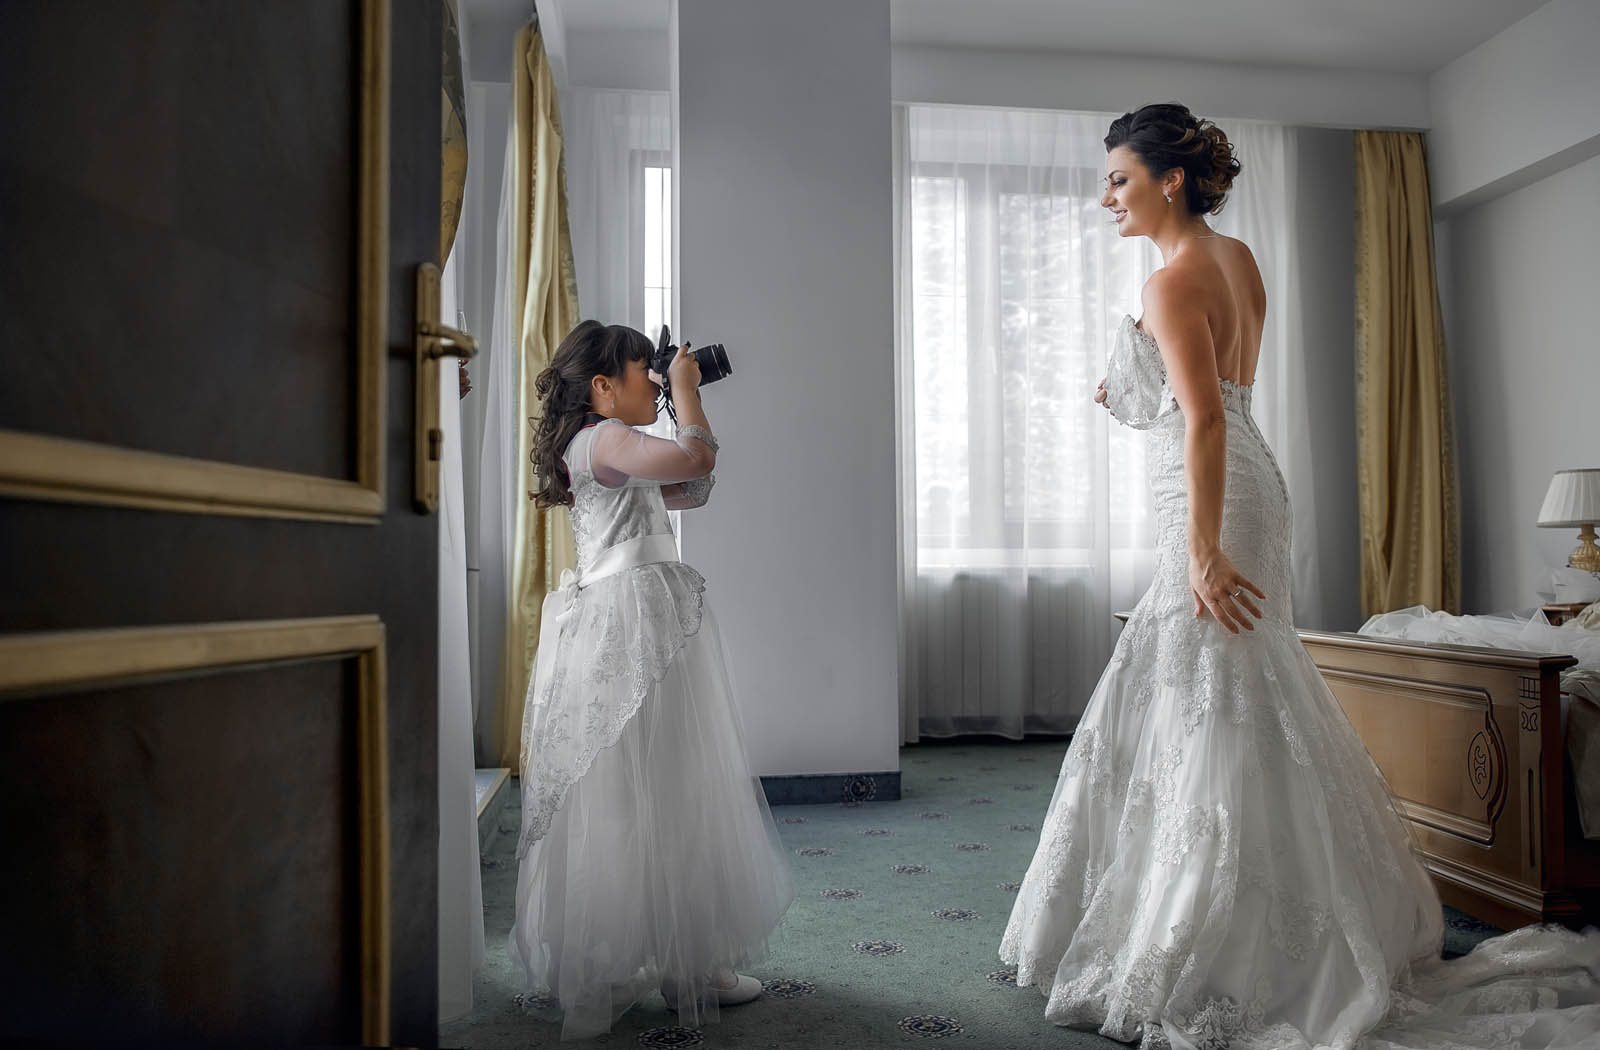 Die Tochter fotografiert die Braut